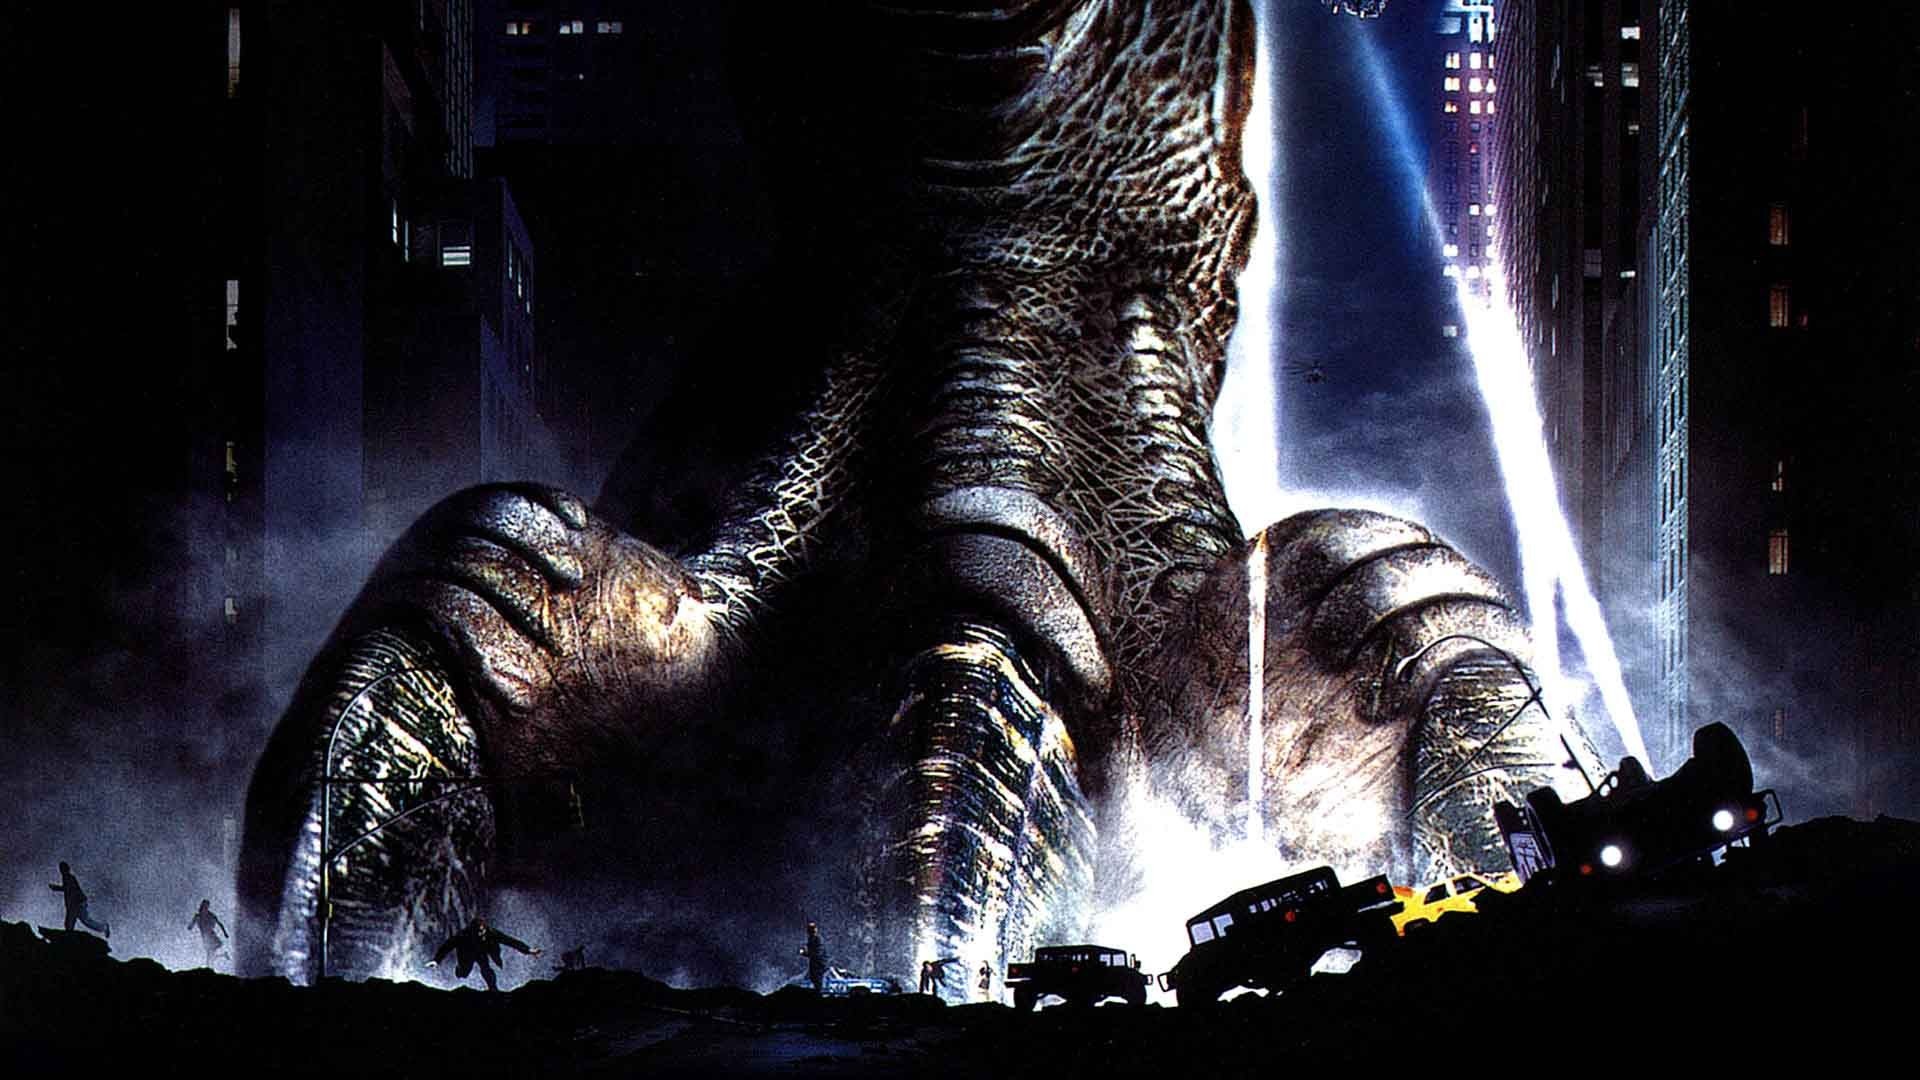 Godzilla 1998 Poster